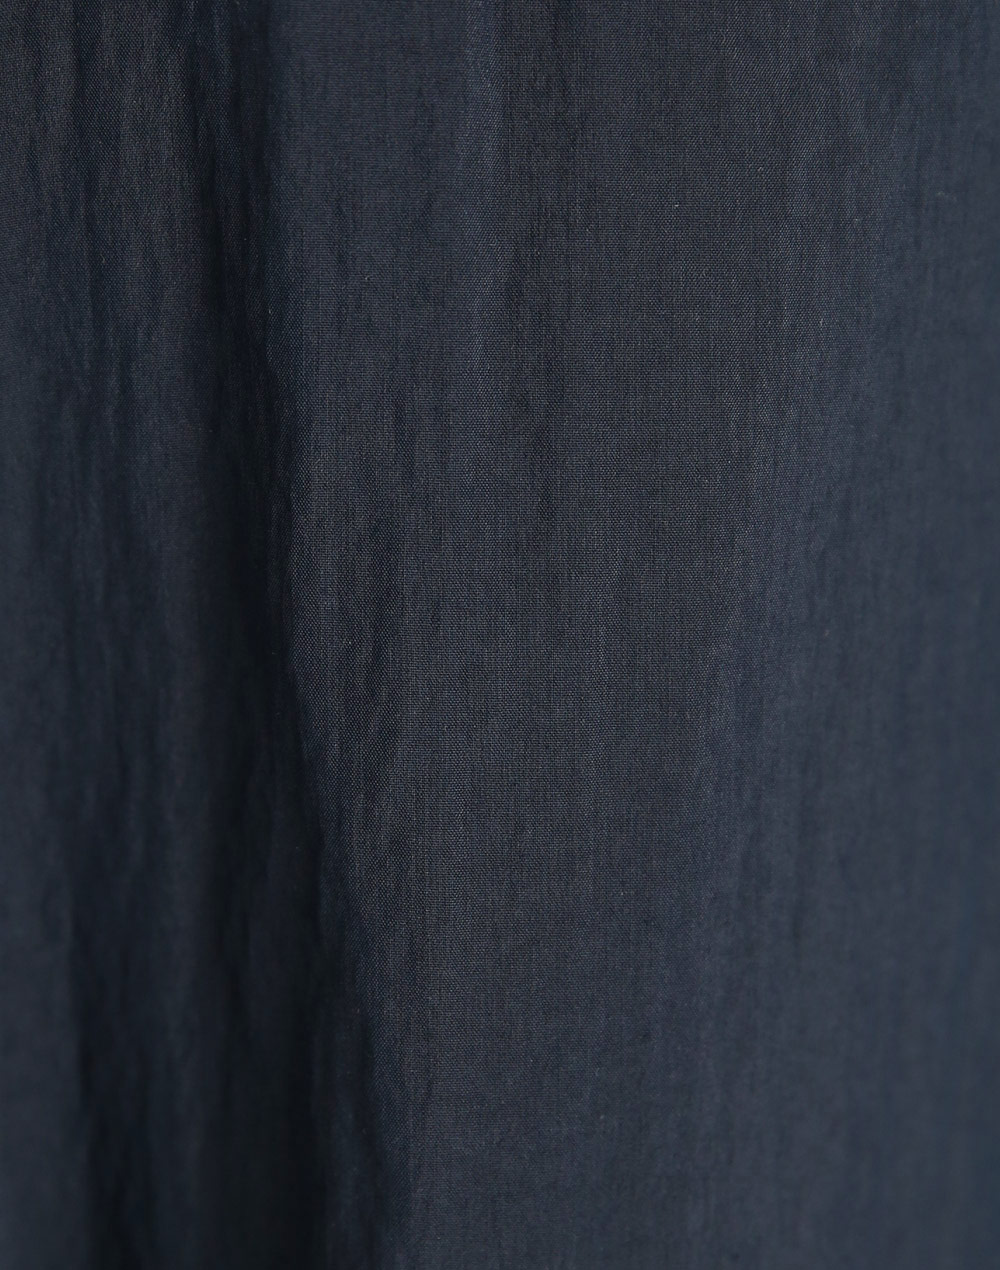 ハーフジップ半袖シャツ・t280115（ブラウス/シャツ）| u_us12 | 東京ガールズマーケット